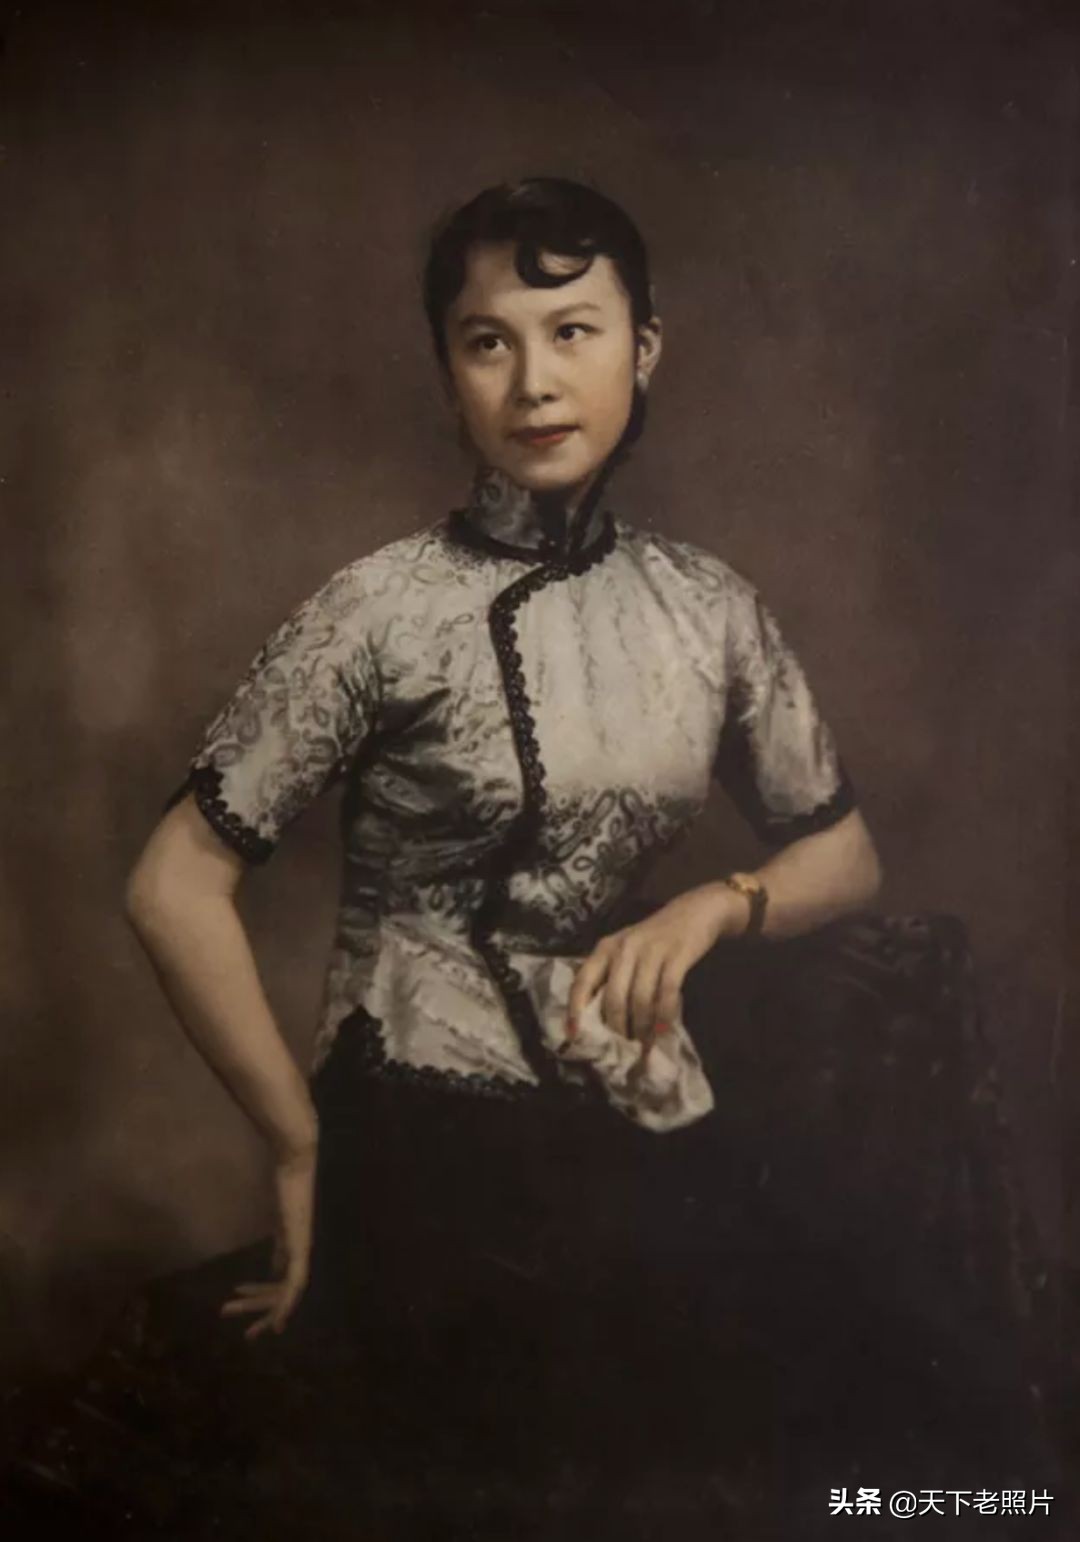 民国期间 沈石蒂在上海拍摄的绝美女子照片集